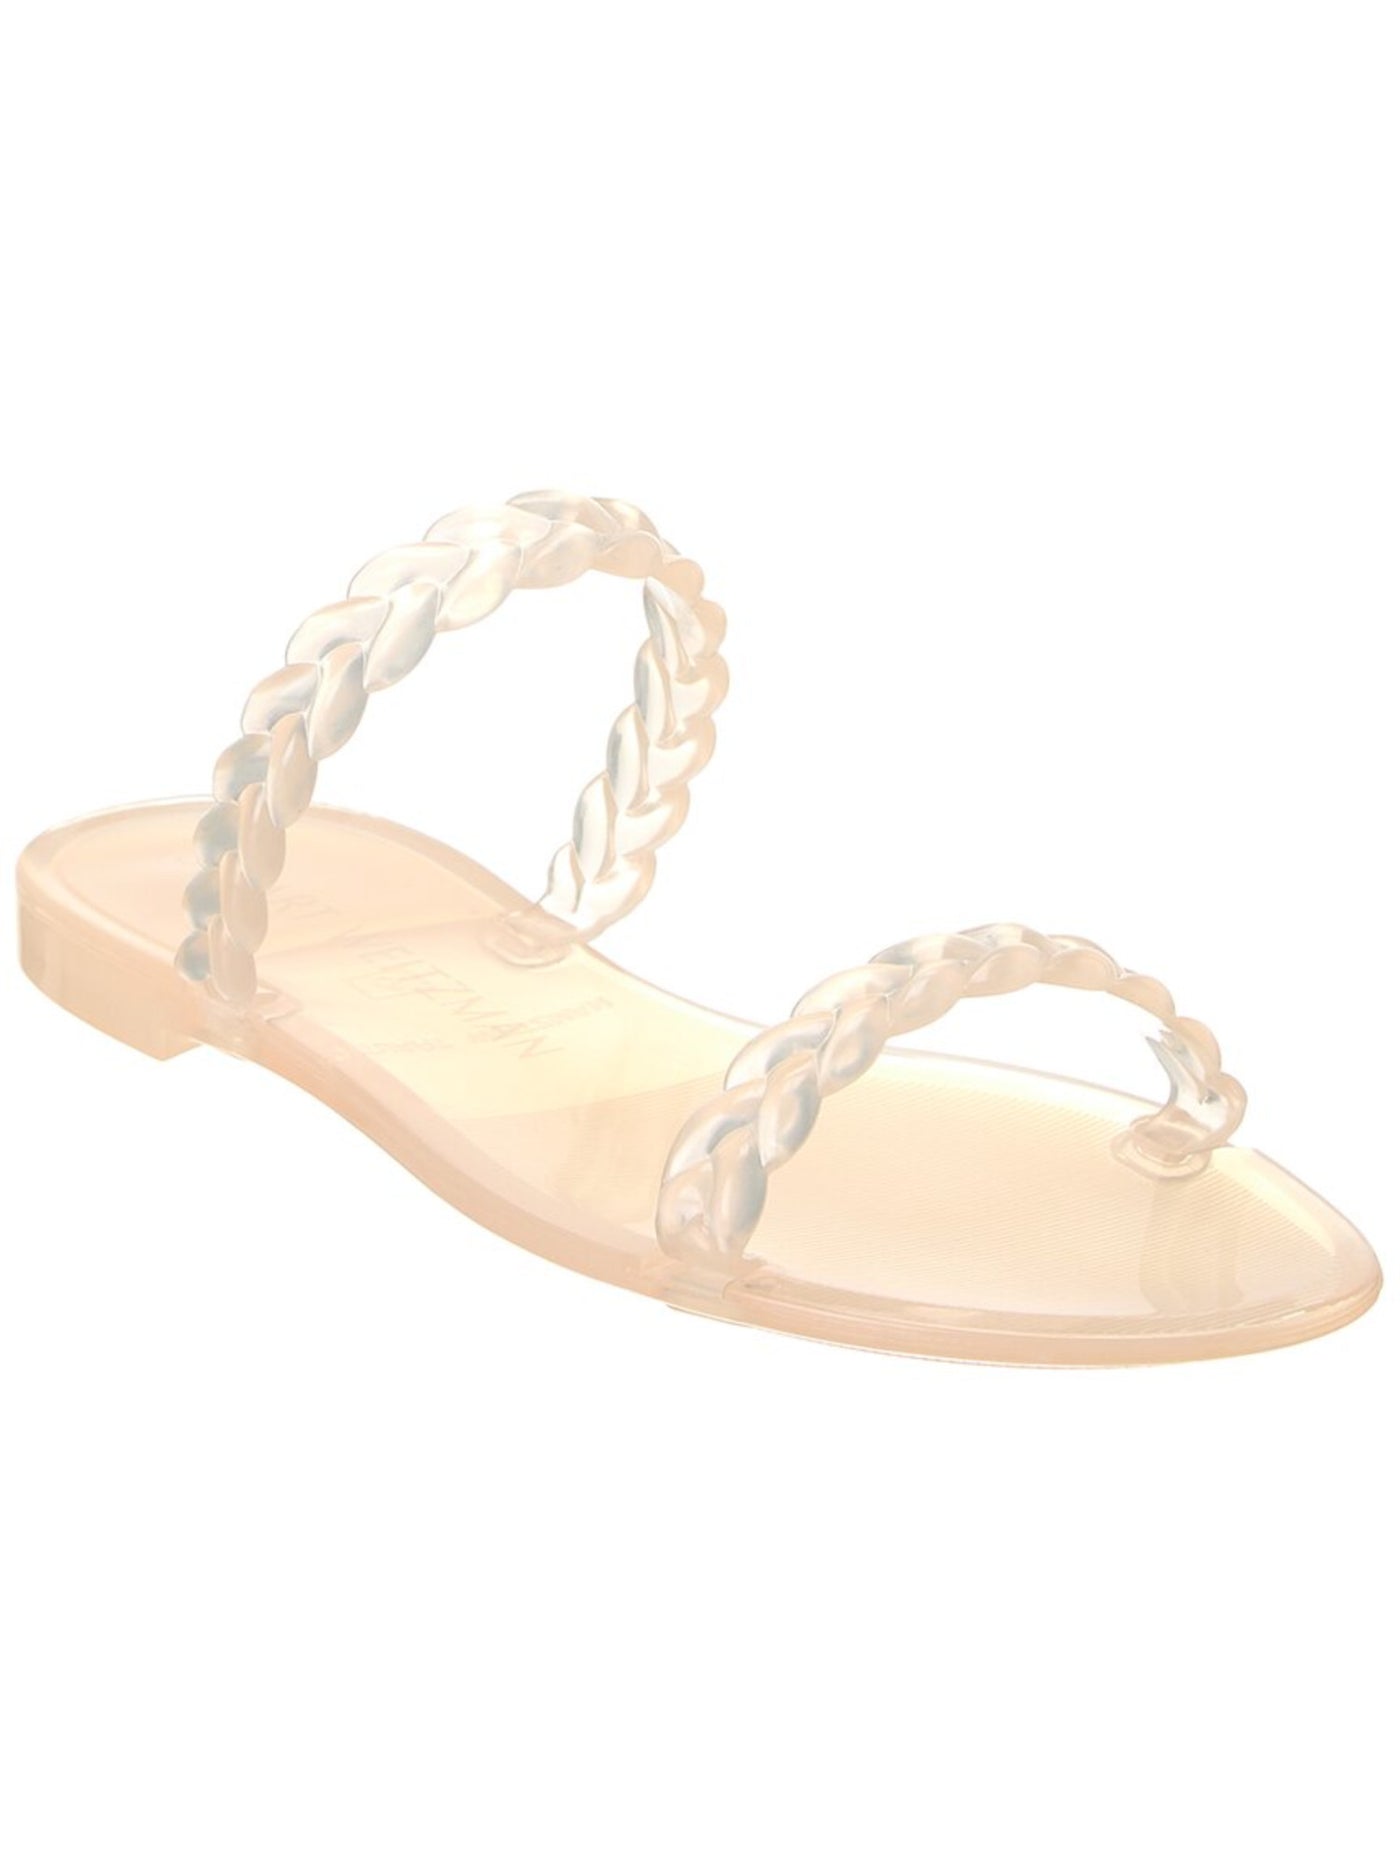 STUART WEITZMAN Womens Beige Braided Strappy Sawyer Round Toe Slip On Slide Sandals Shoes 6 B